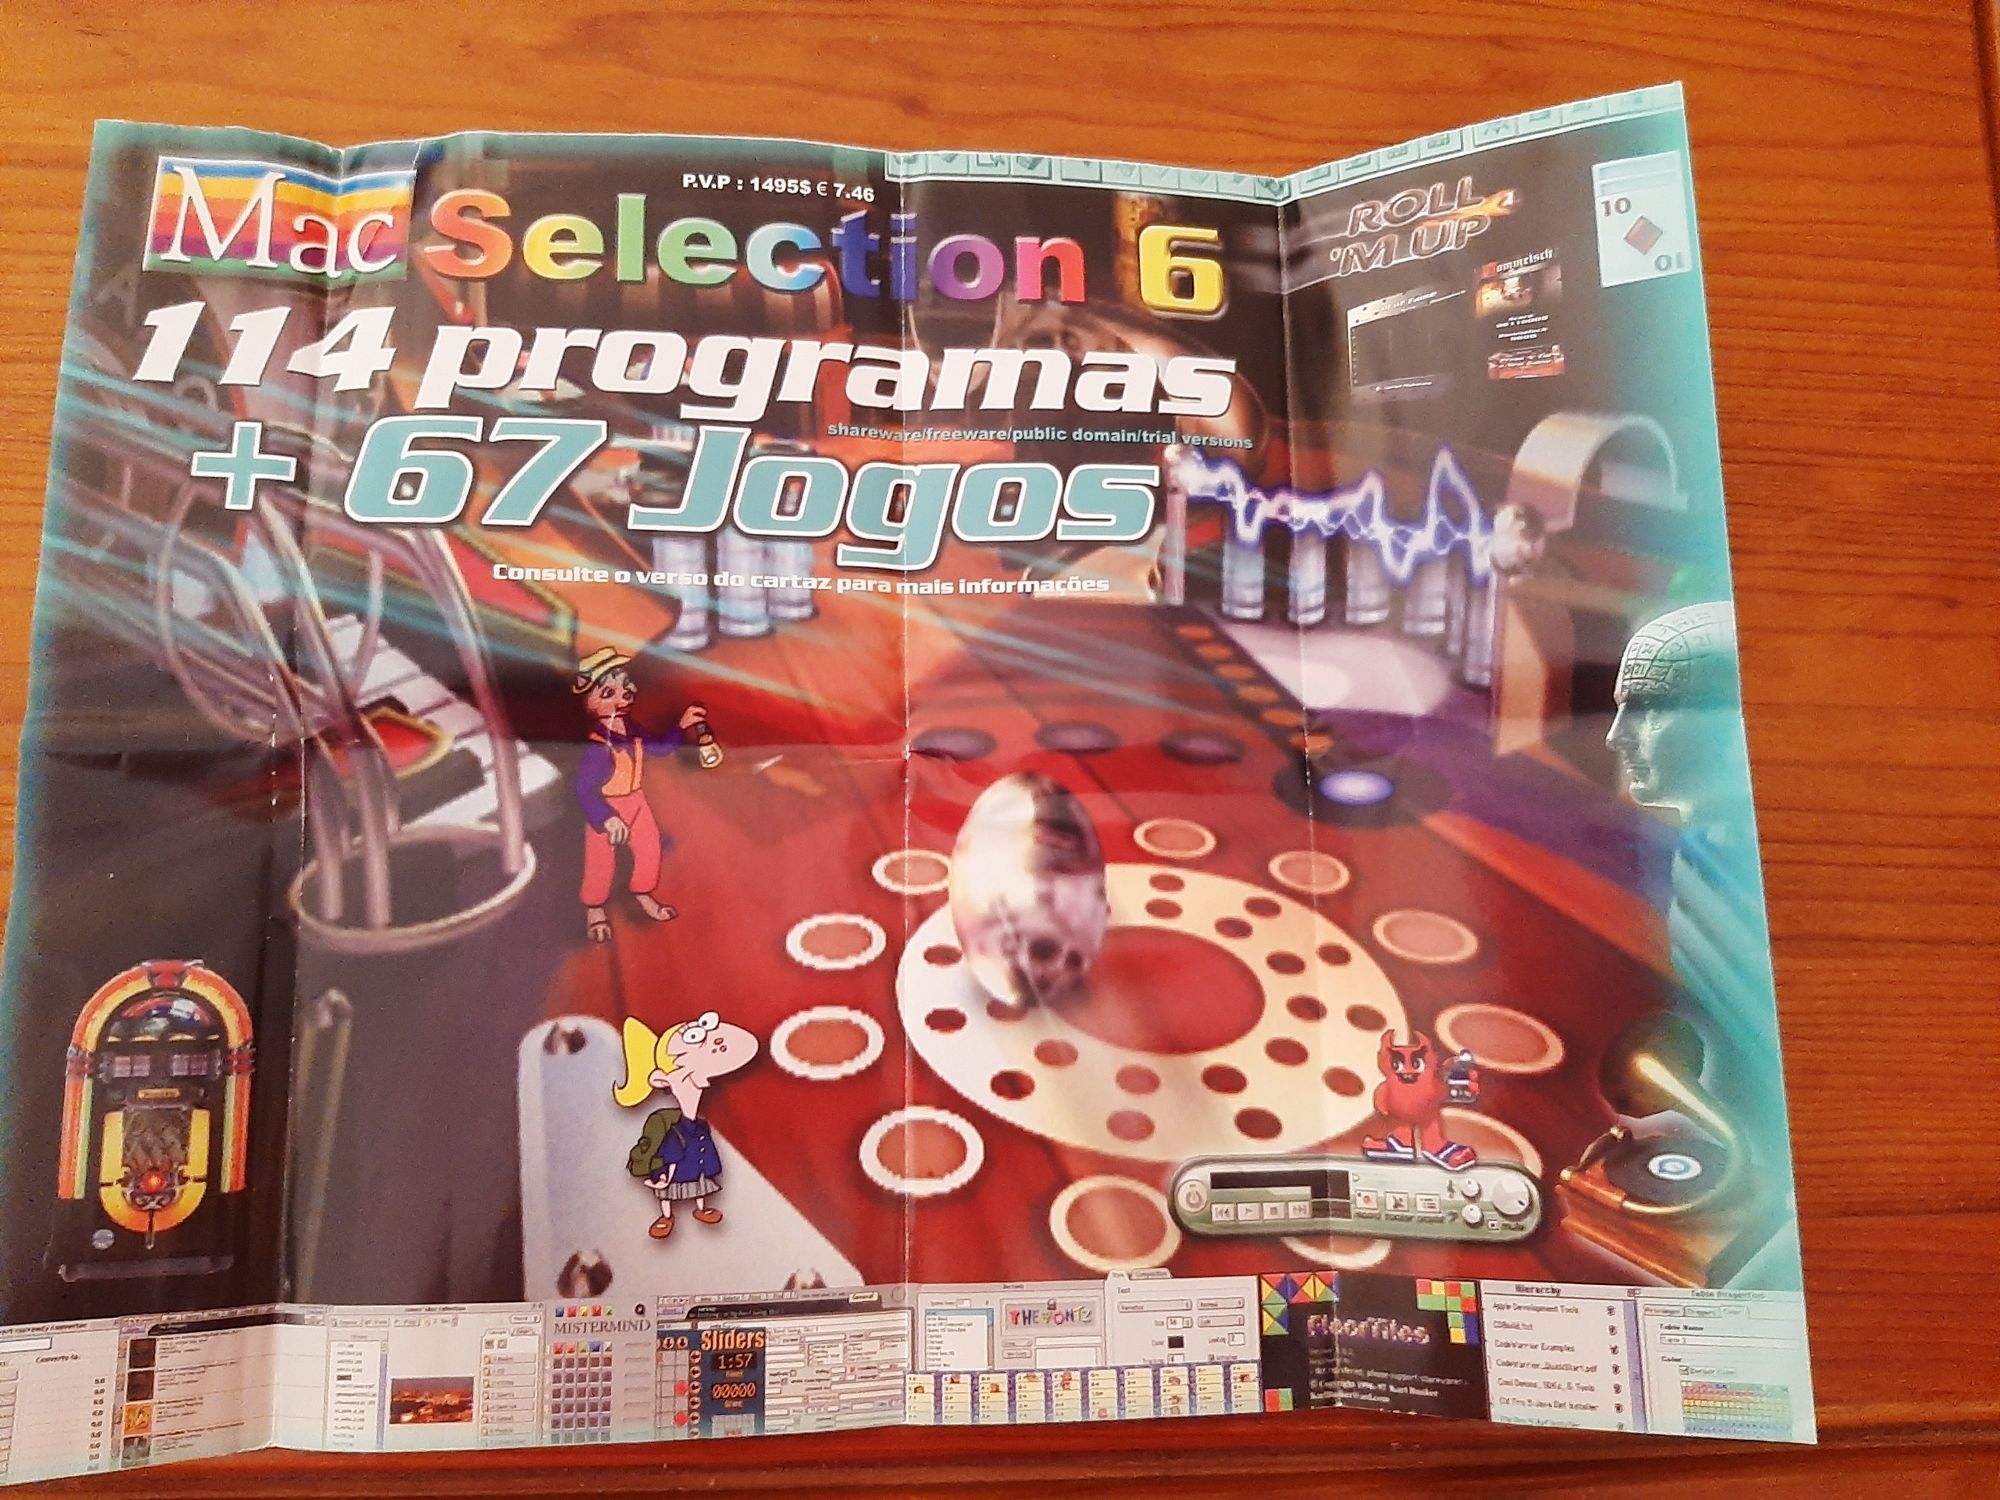 CD com 67 jogos para PC + 114 programas